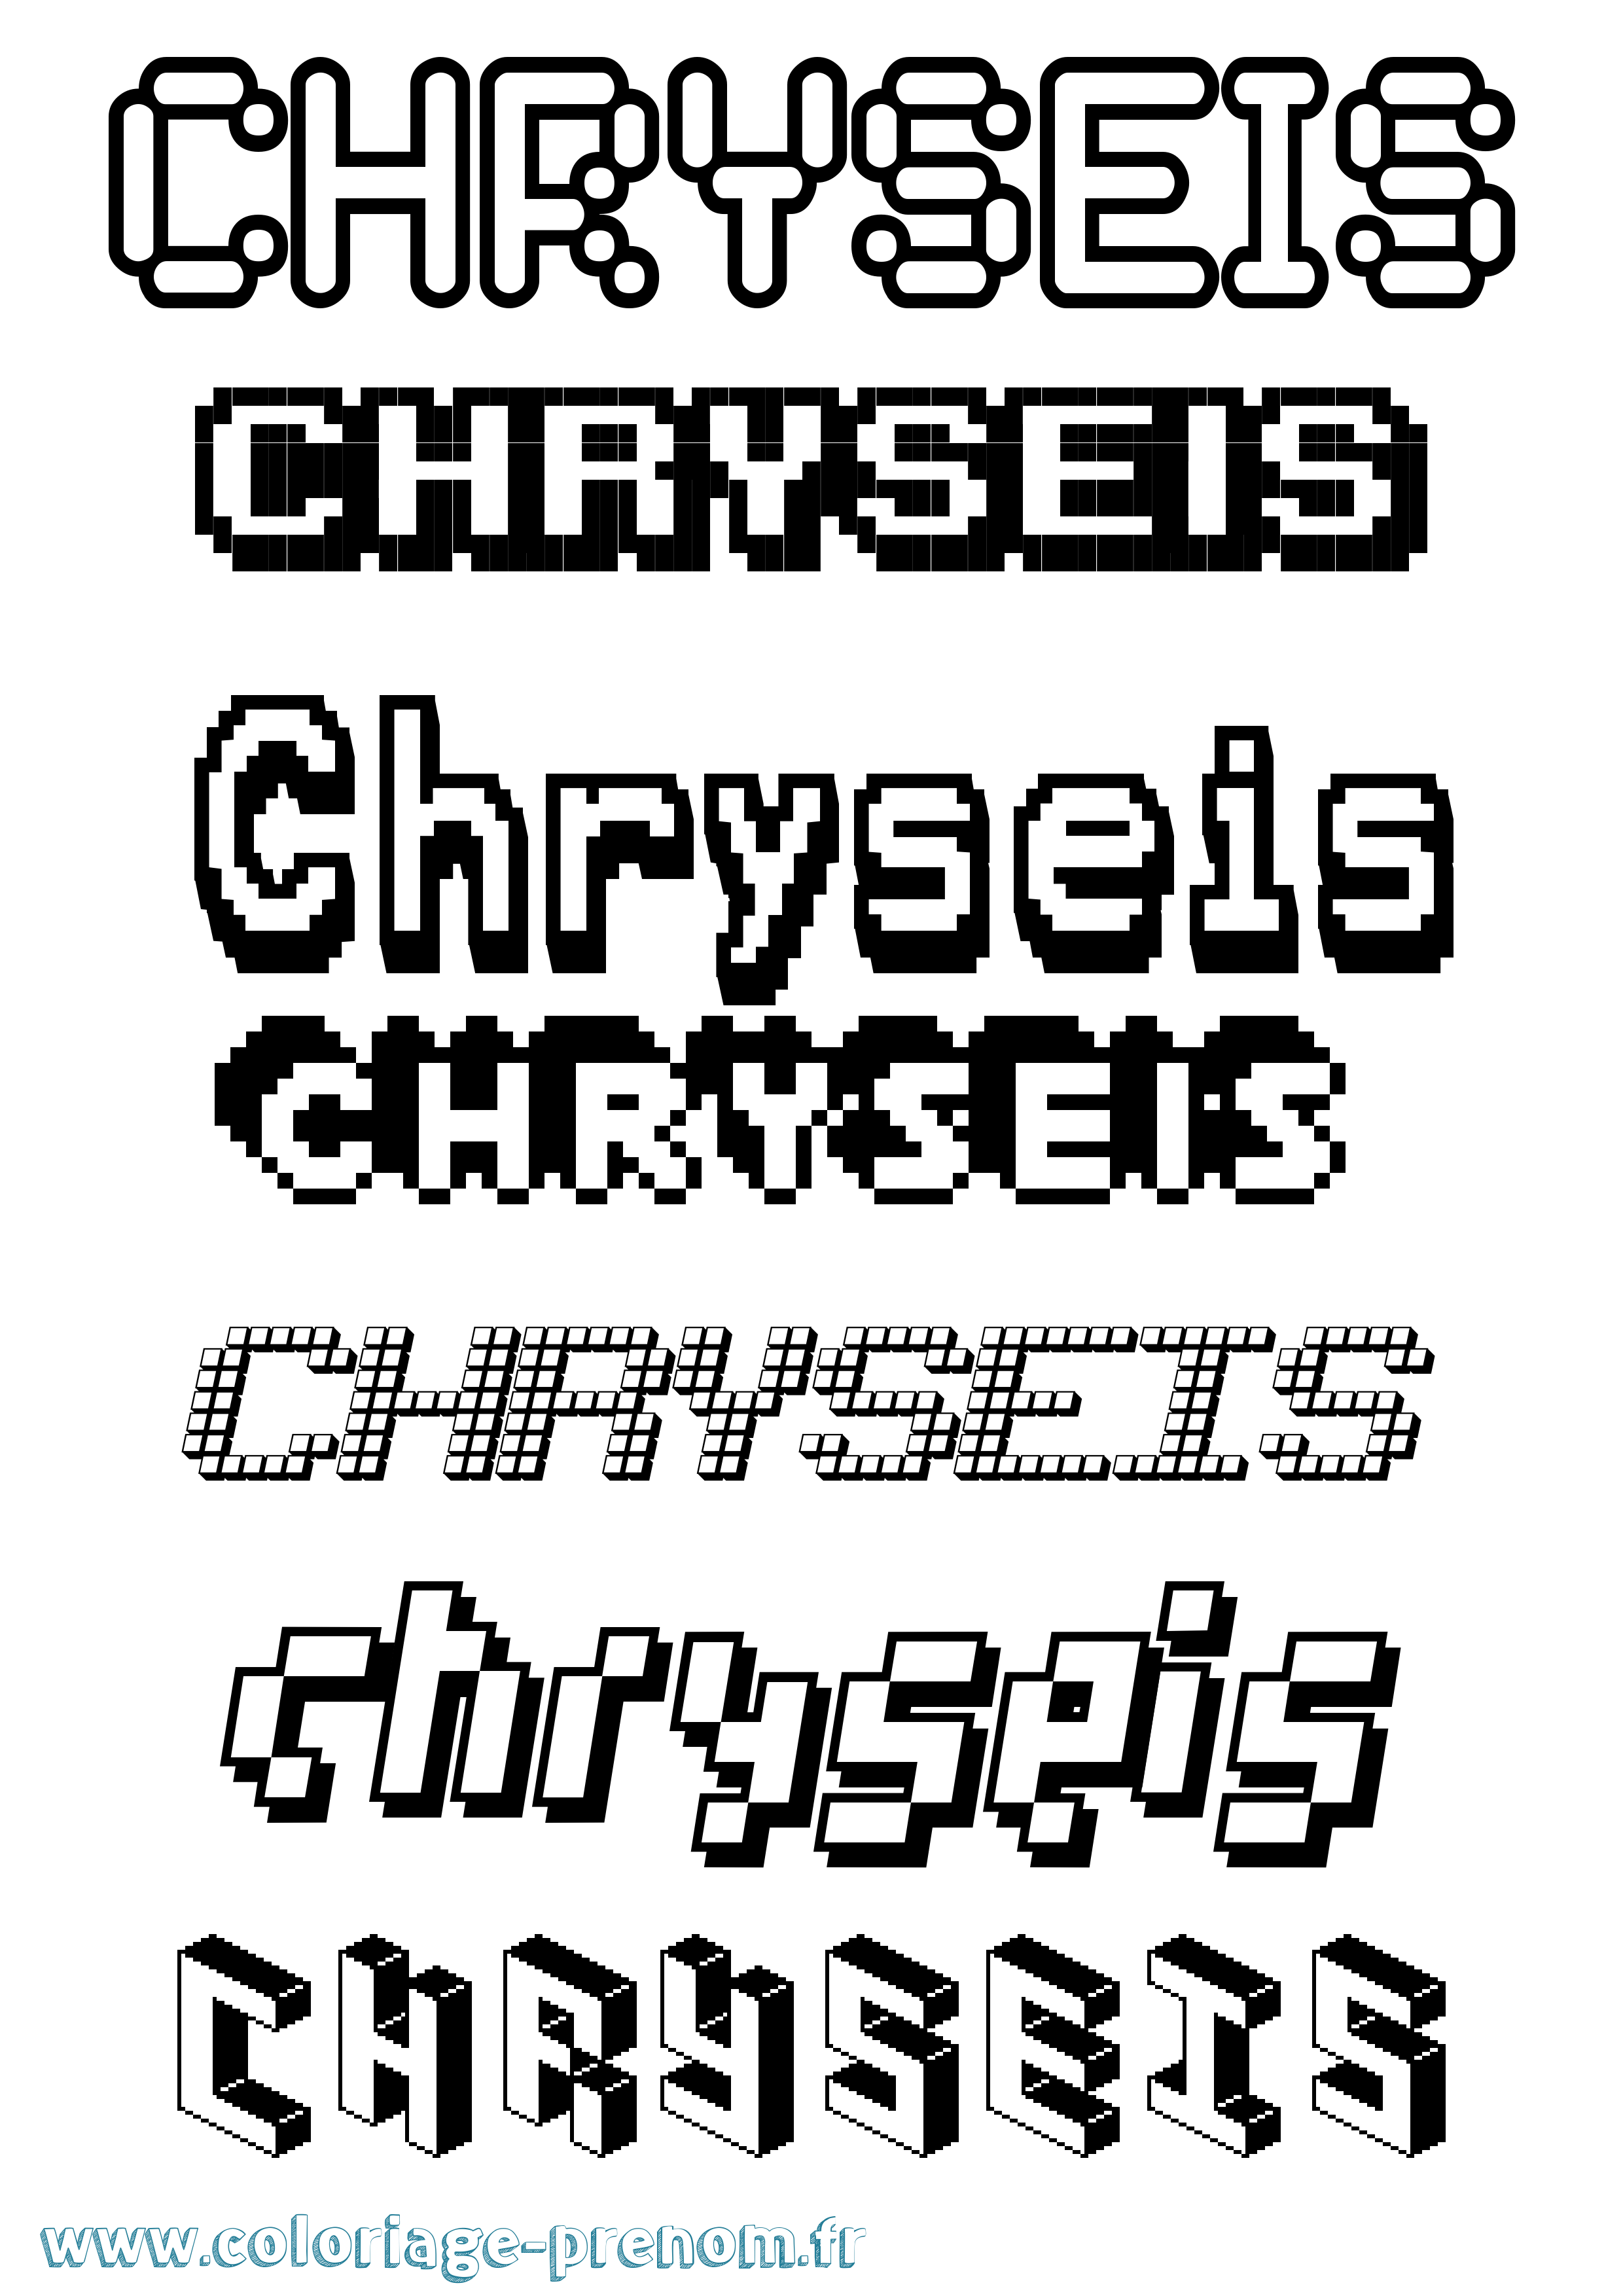 Coloriage prénom Chryseis Pixel